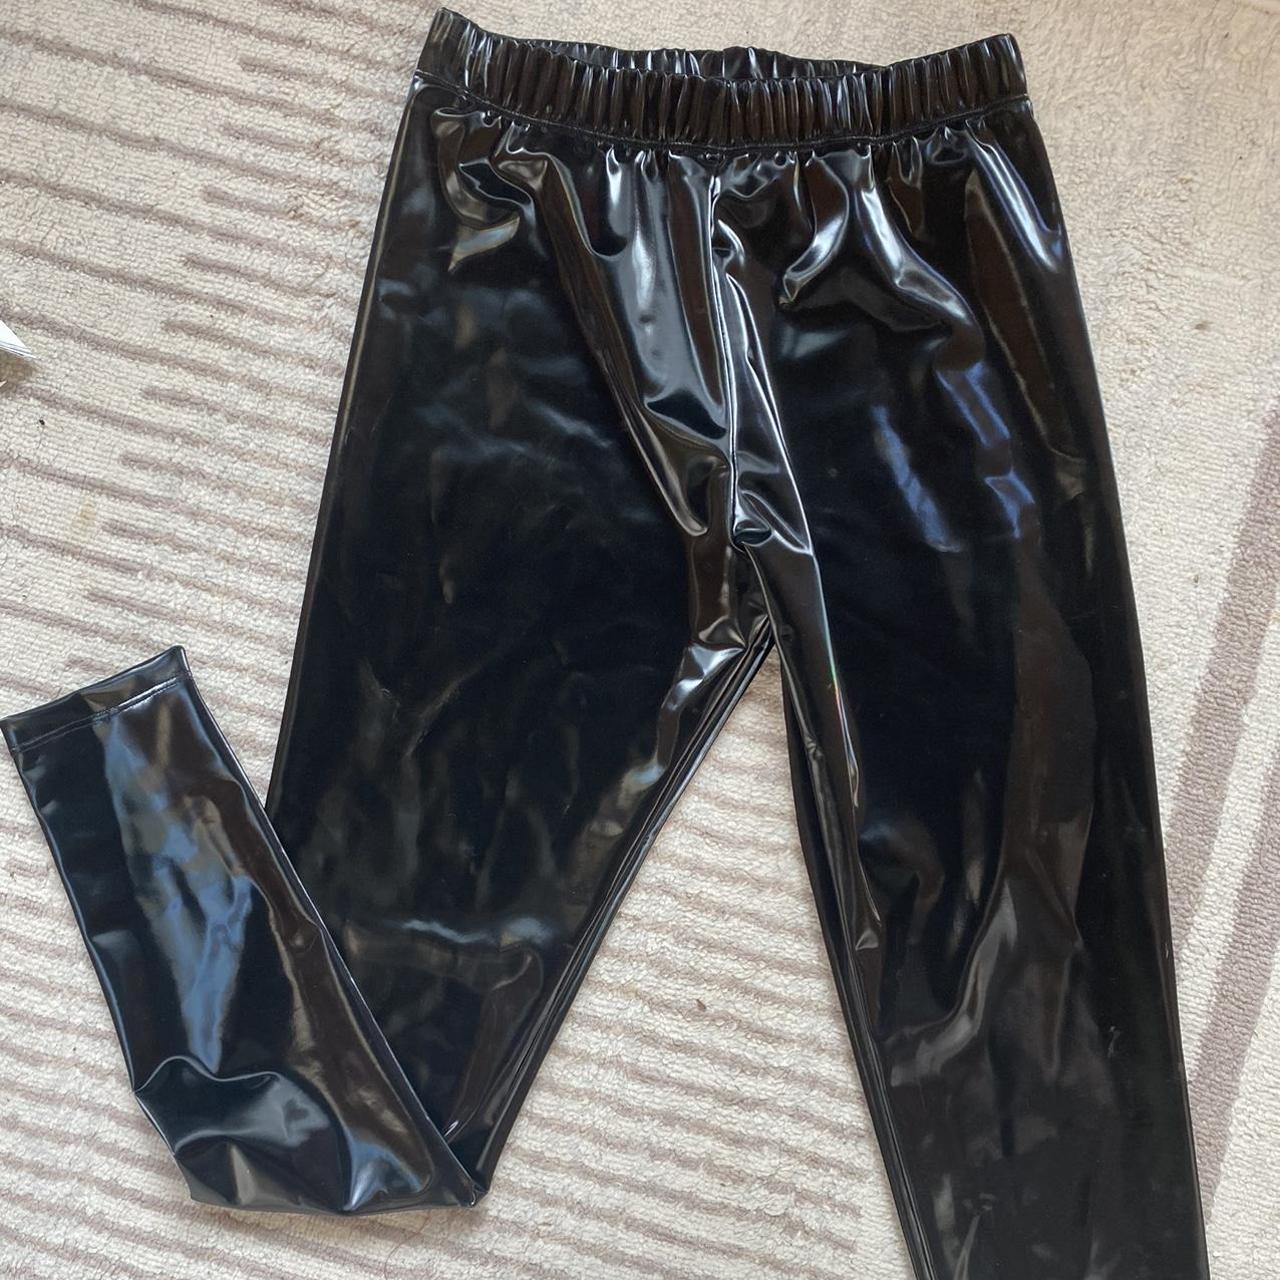 Shiny Vinyl Black Trousers - Just $4